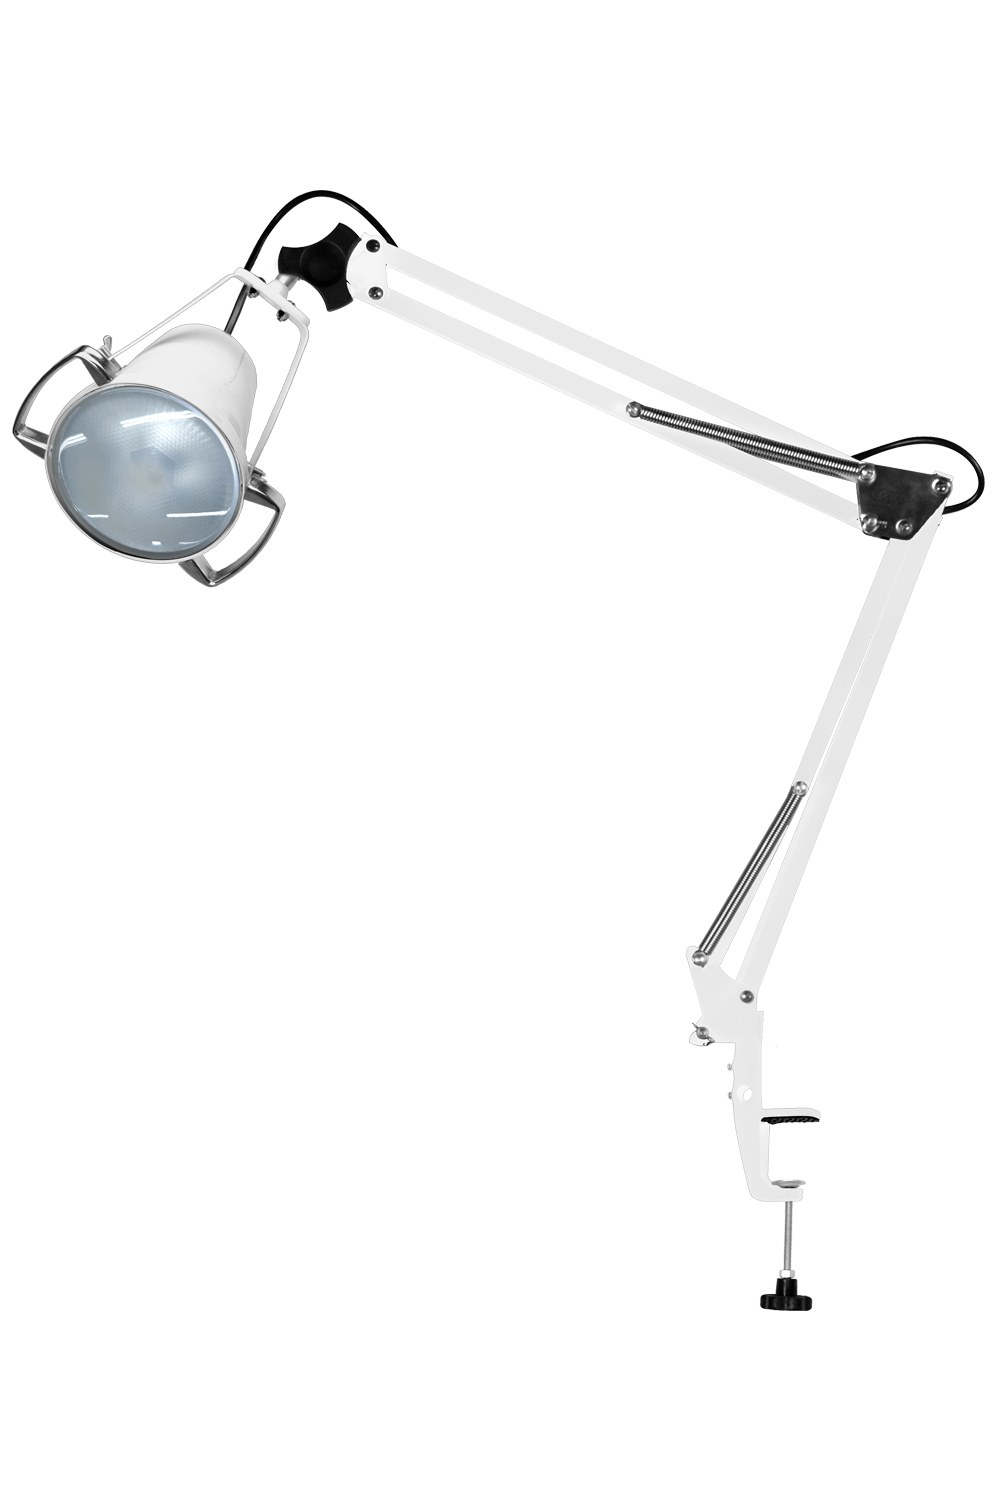 Foco de Luz Fria Conc. a LED com Apoio Autovolt - Branco 